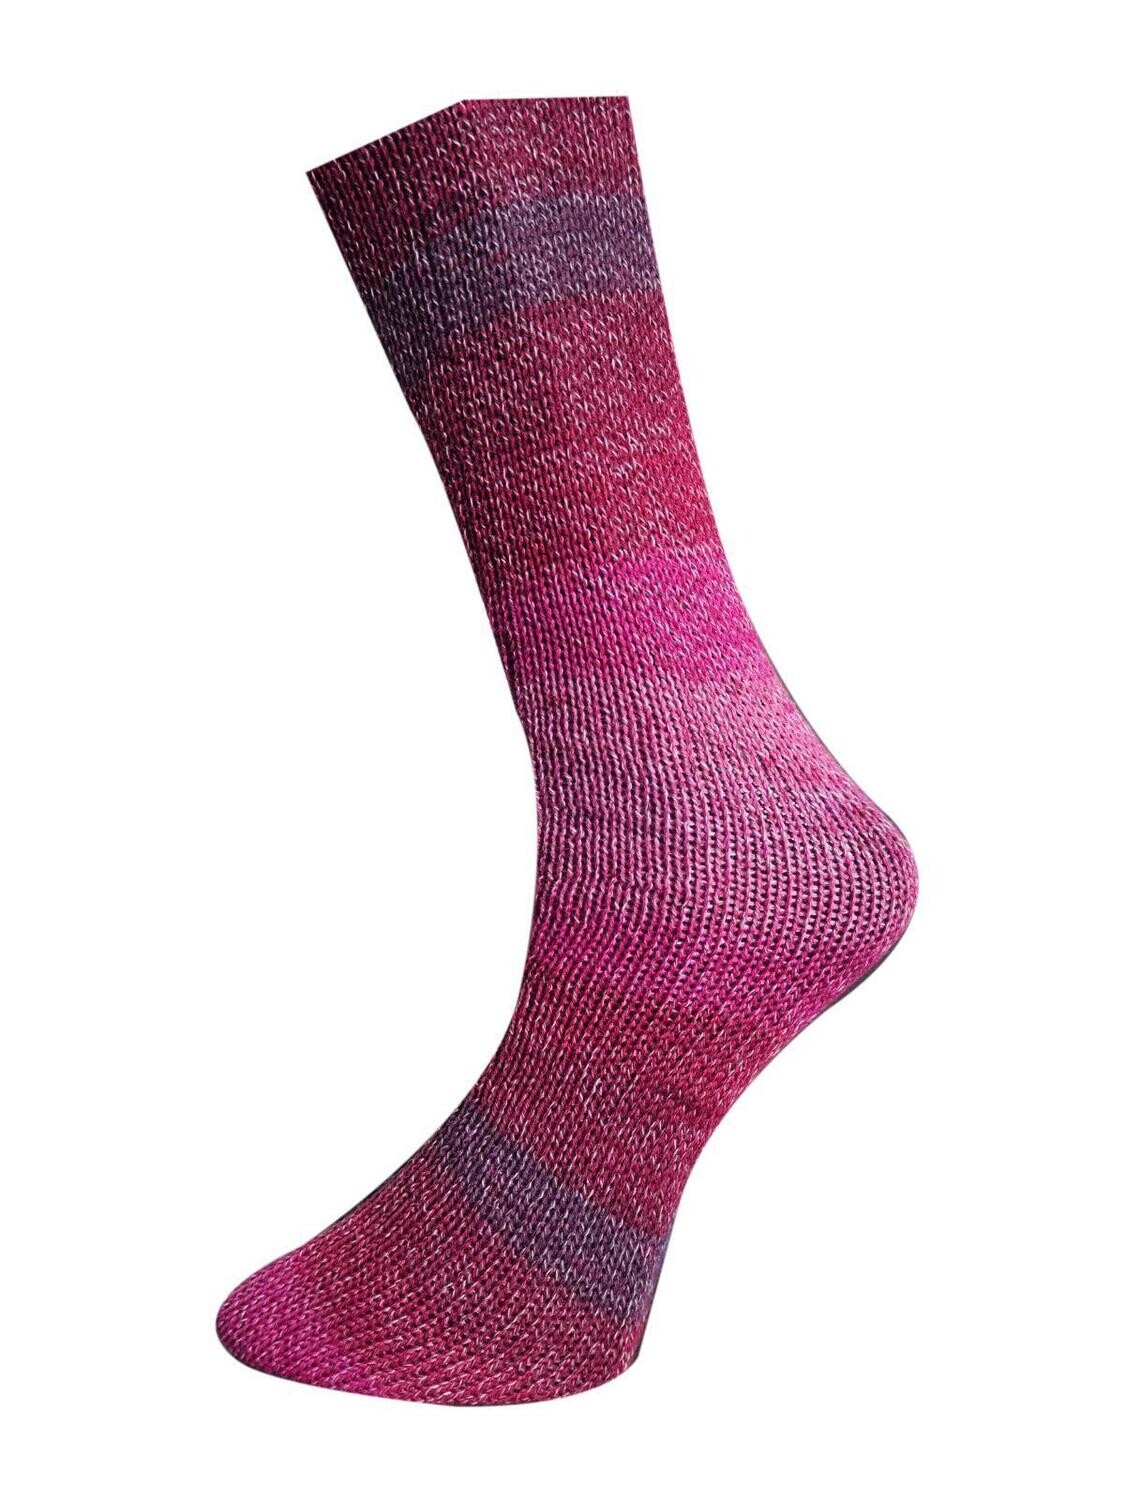 Ferner Lungauer Sockenwolle Baumwolle (100g), Farbe: 407